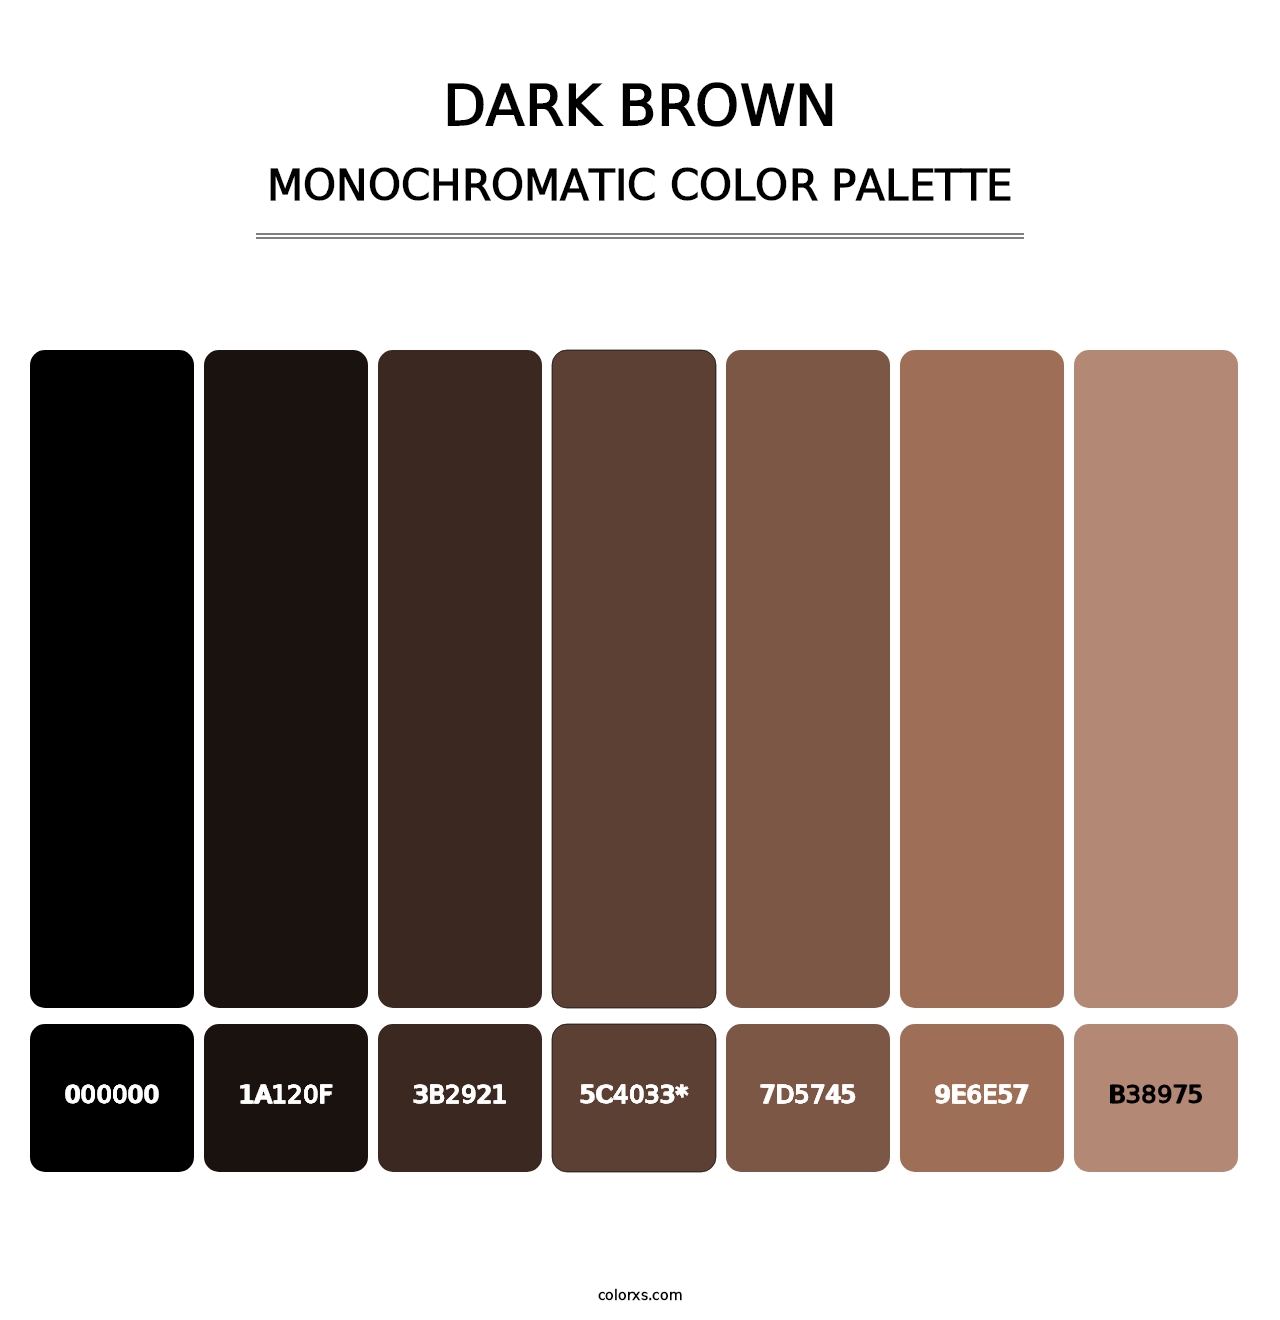 Dark Brown - Monochromatic Color Palette